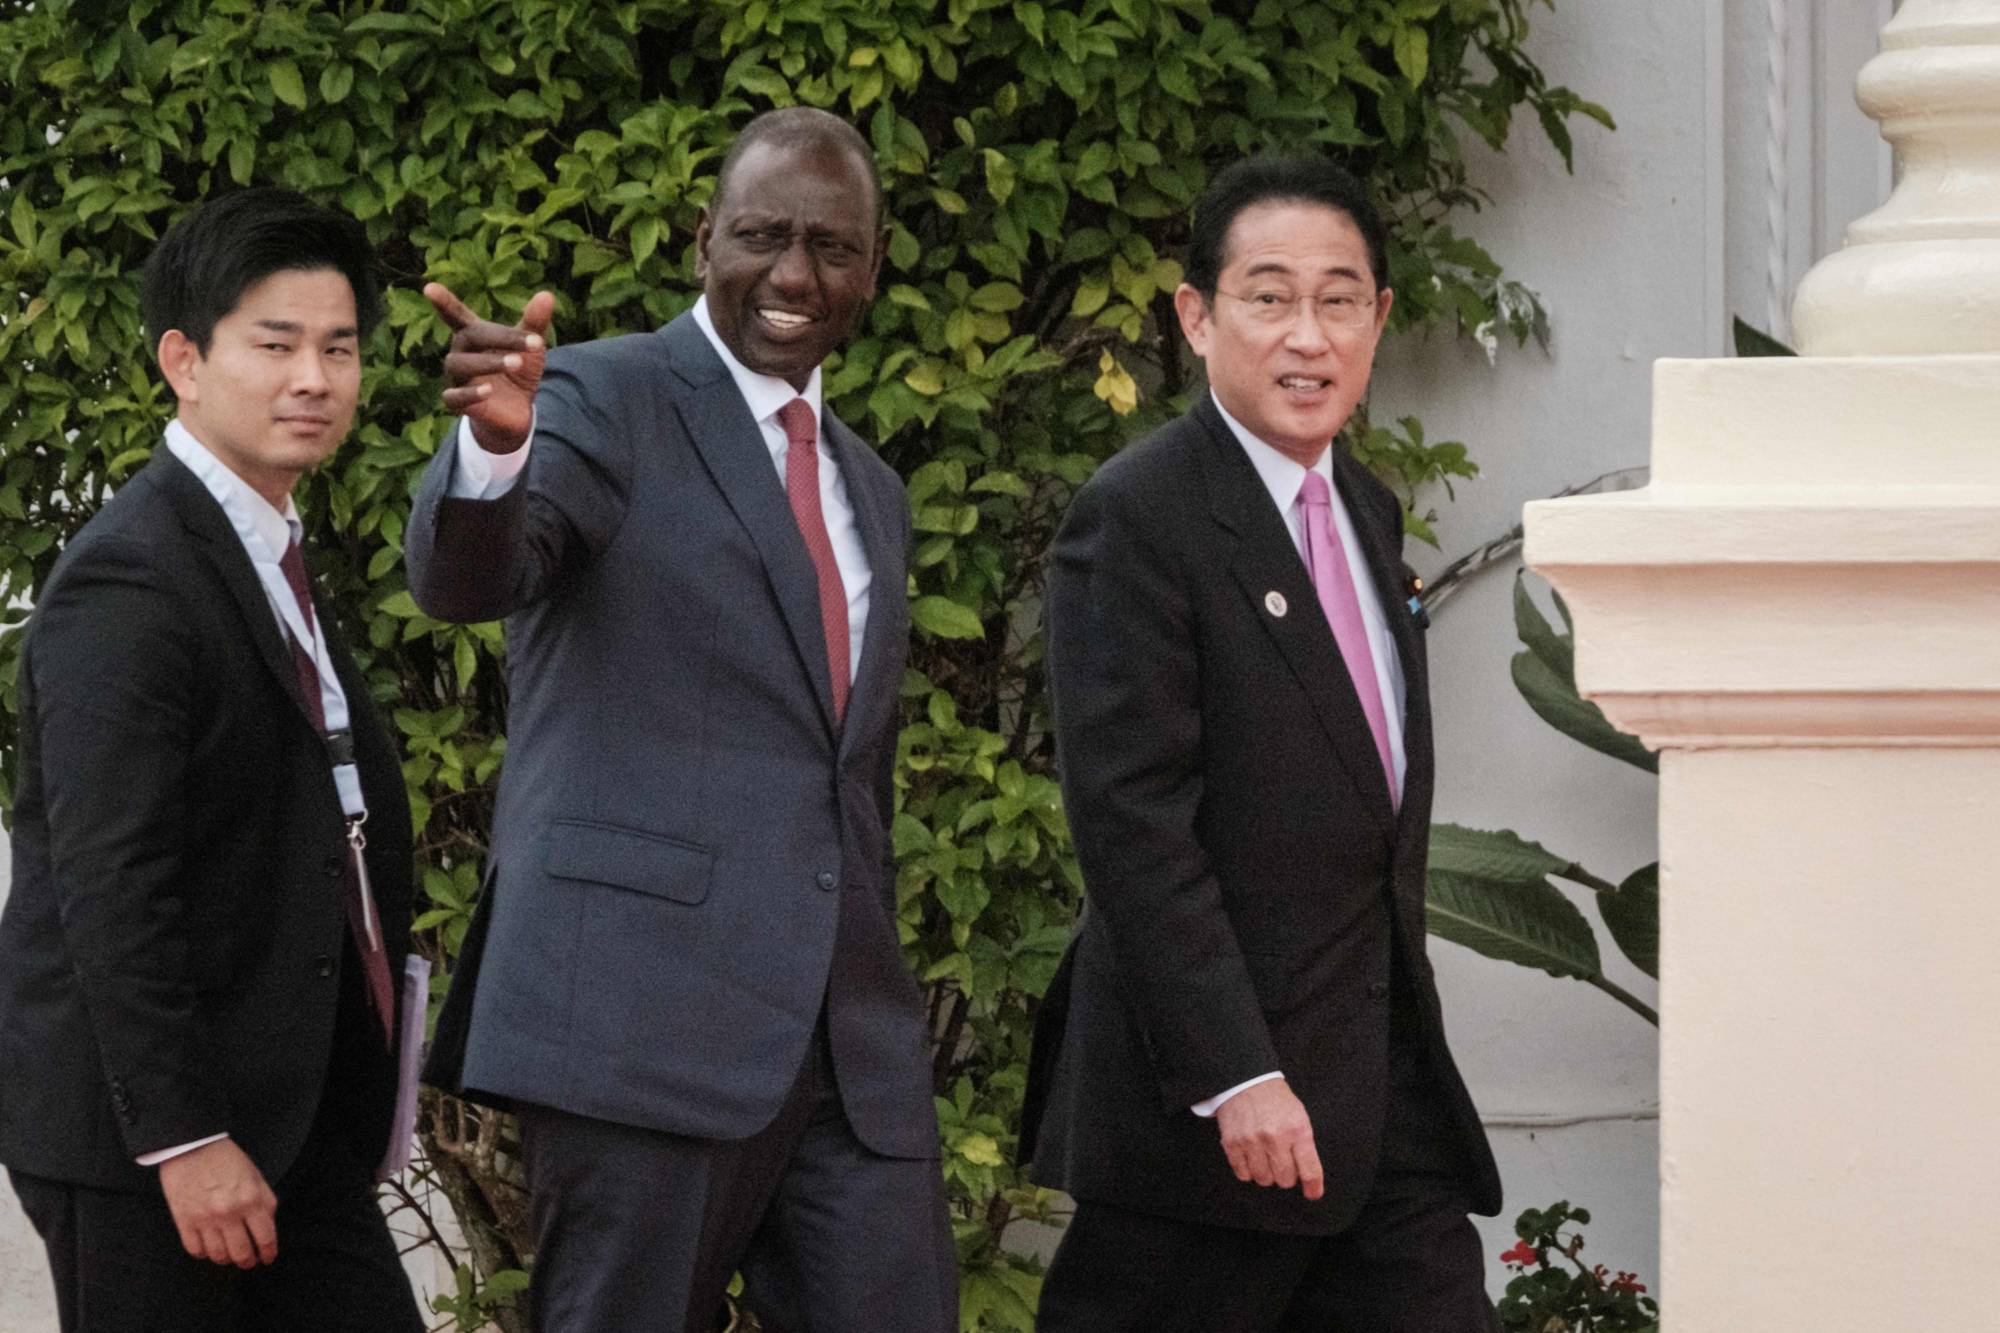 Japan loans $500M to Kenya via Samurai bond